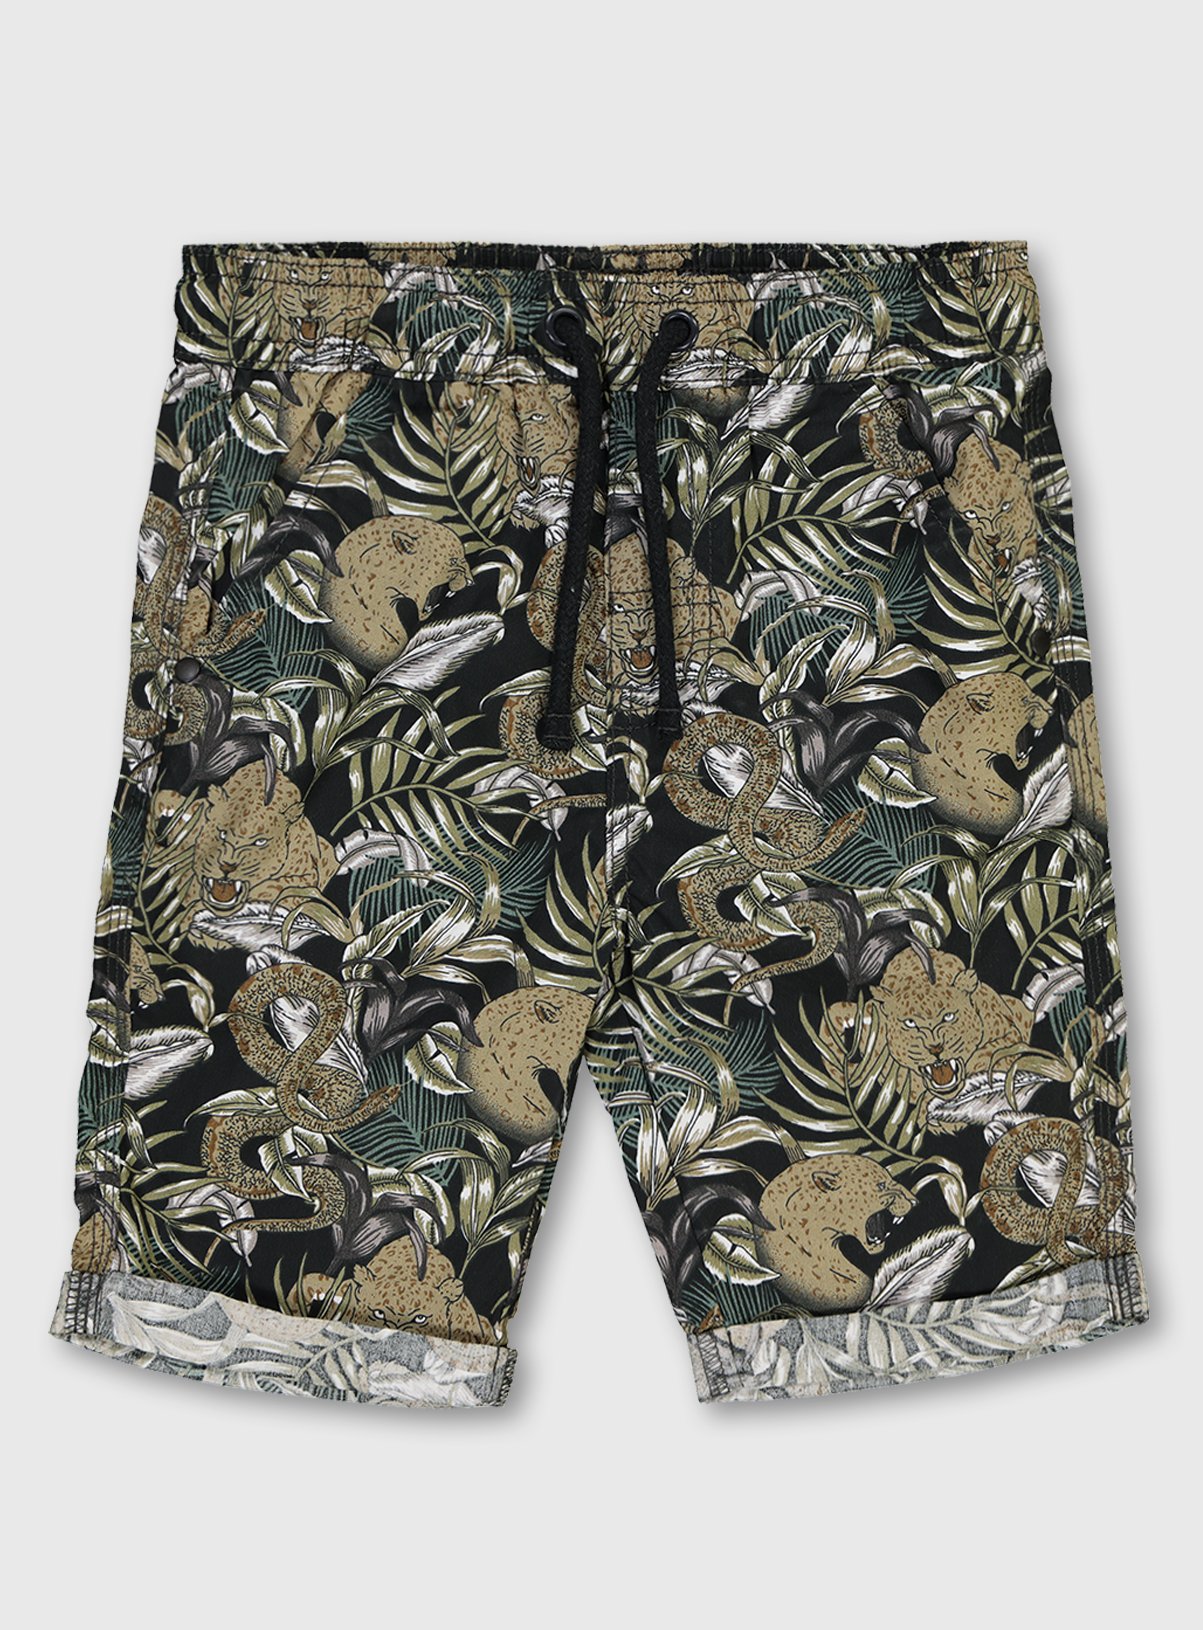 Jungle Animal Print Shorts Review